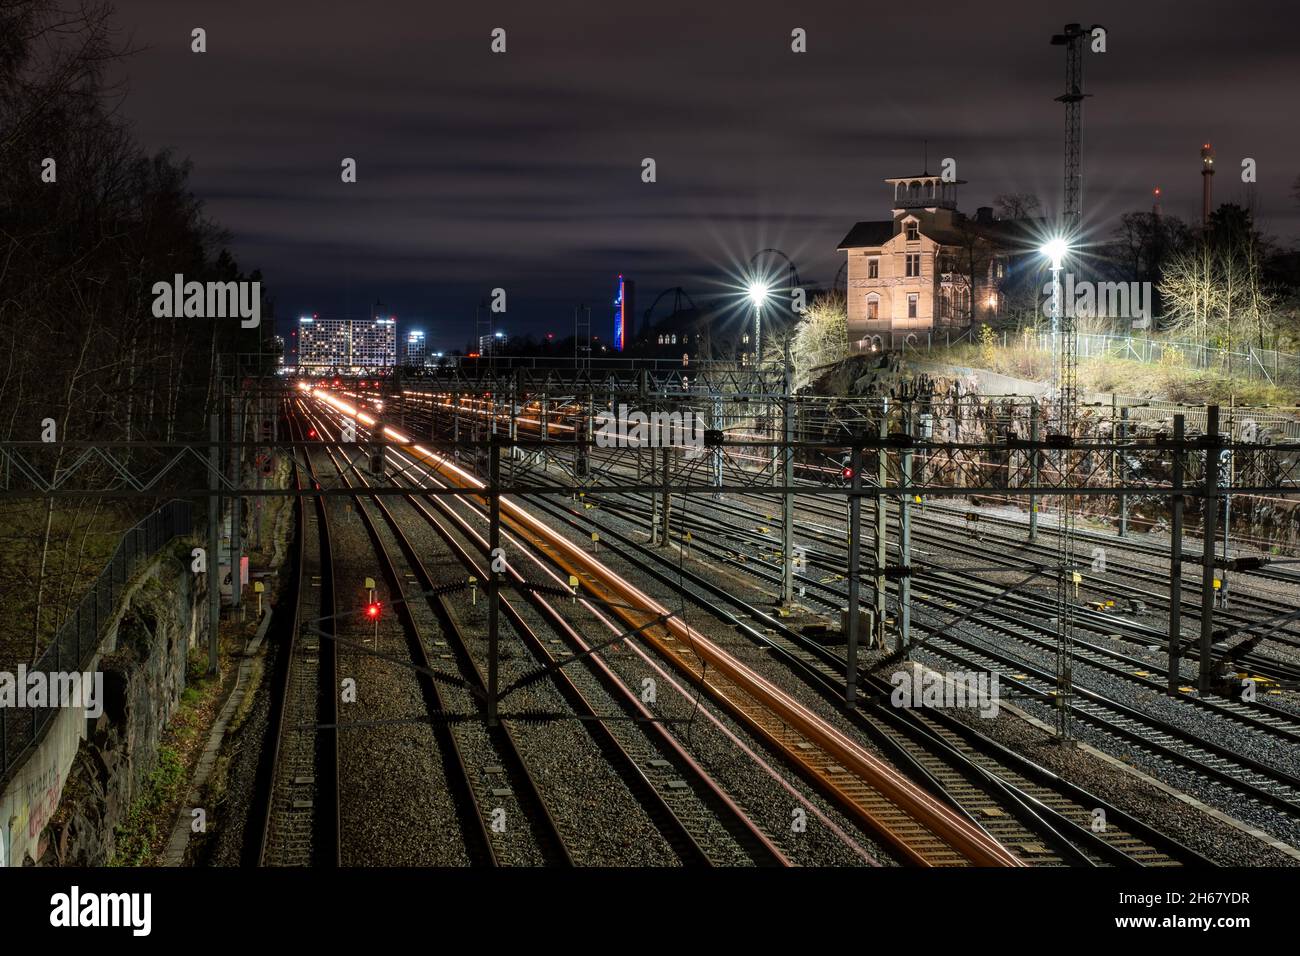 Helsinki / Finlande - 13 NOVEMBRE 2021 : en contournant les trains qui parcourent des pistes de lumière sur les voies ferrées, avec une belle vue d'horizon de la ville en arrière-plan. Banque D'Images